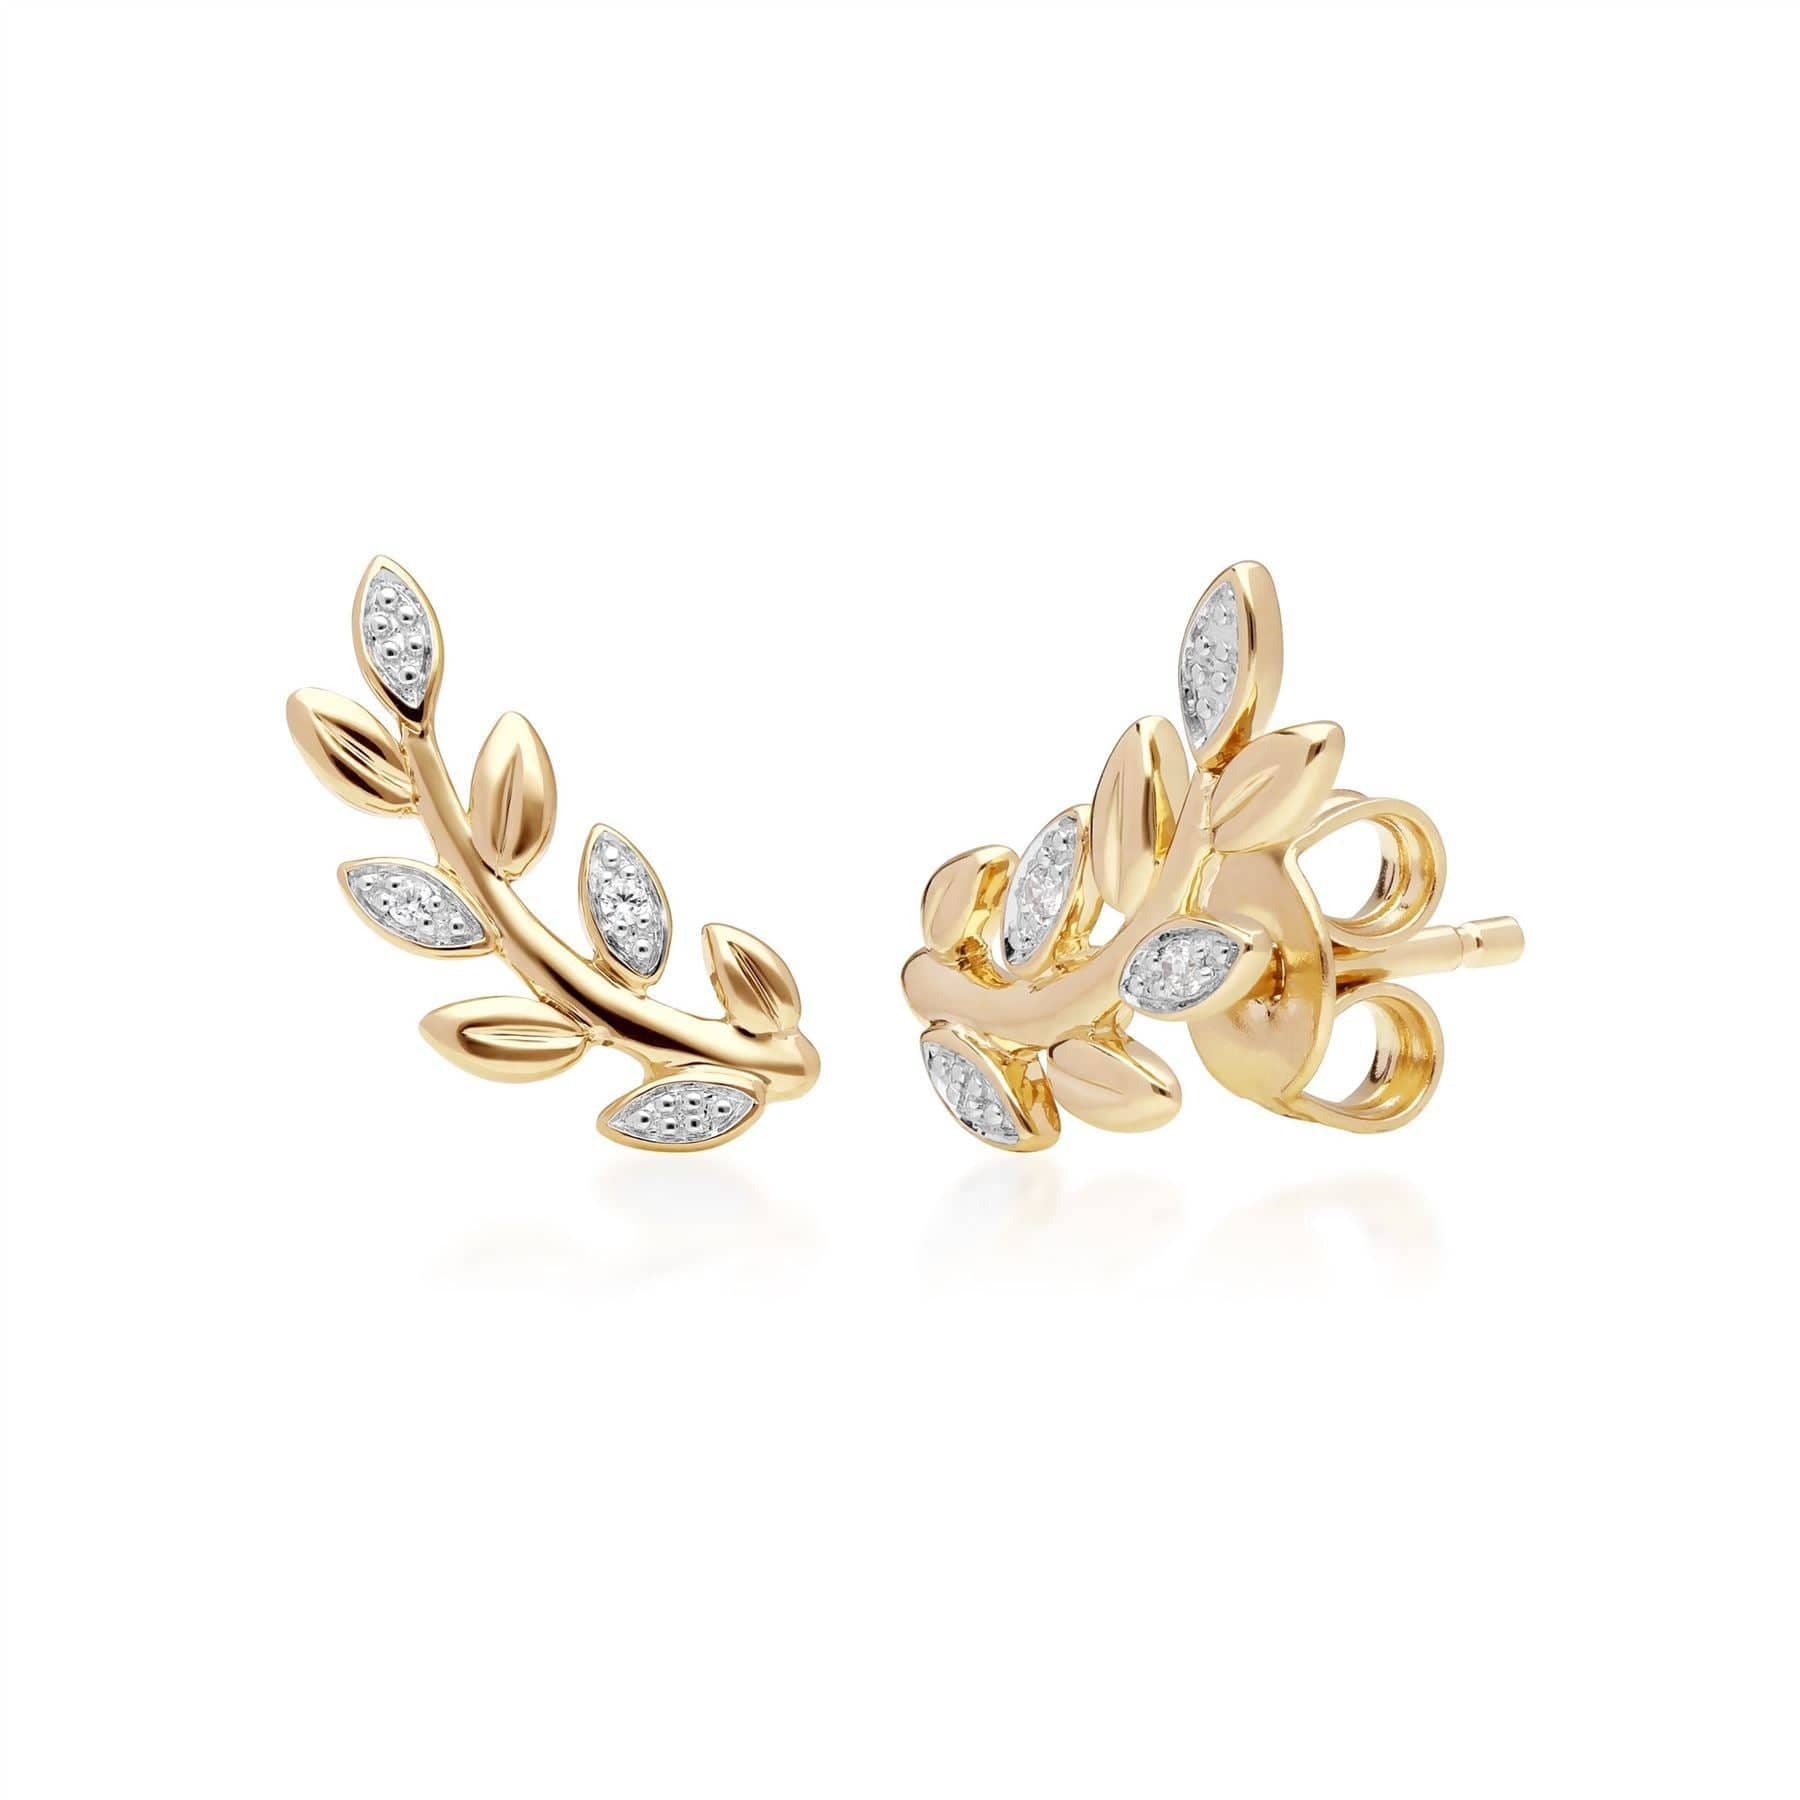 191L0158019-191E0403019 O Leaf Diamond Bracelet & Stud Earrings Set in 9ct Yellow Gold 3